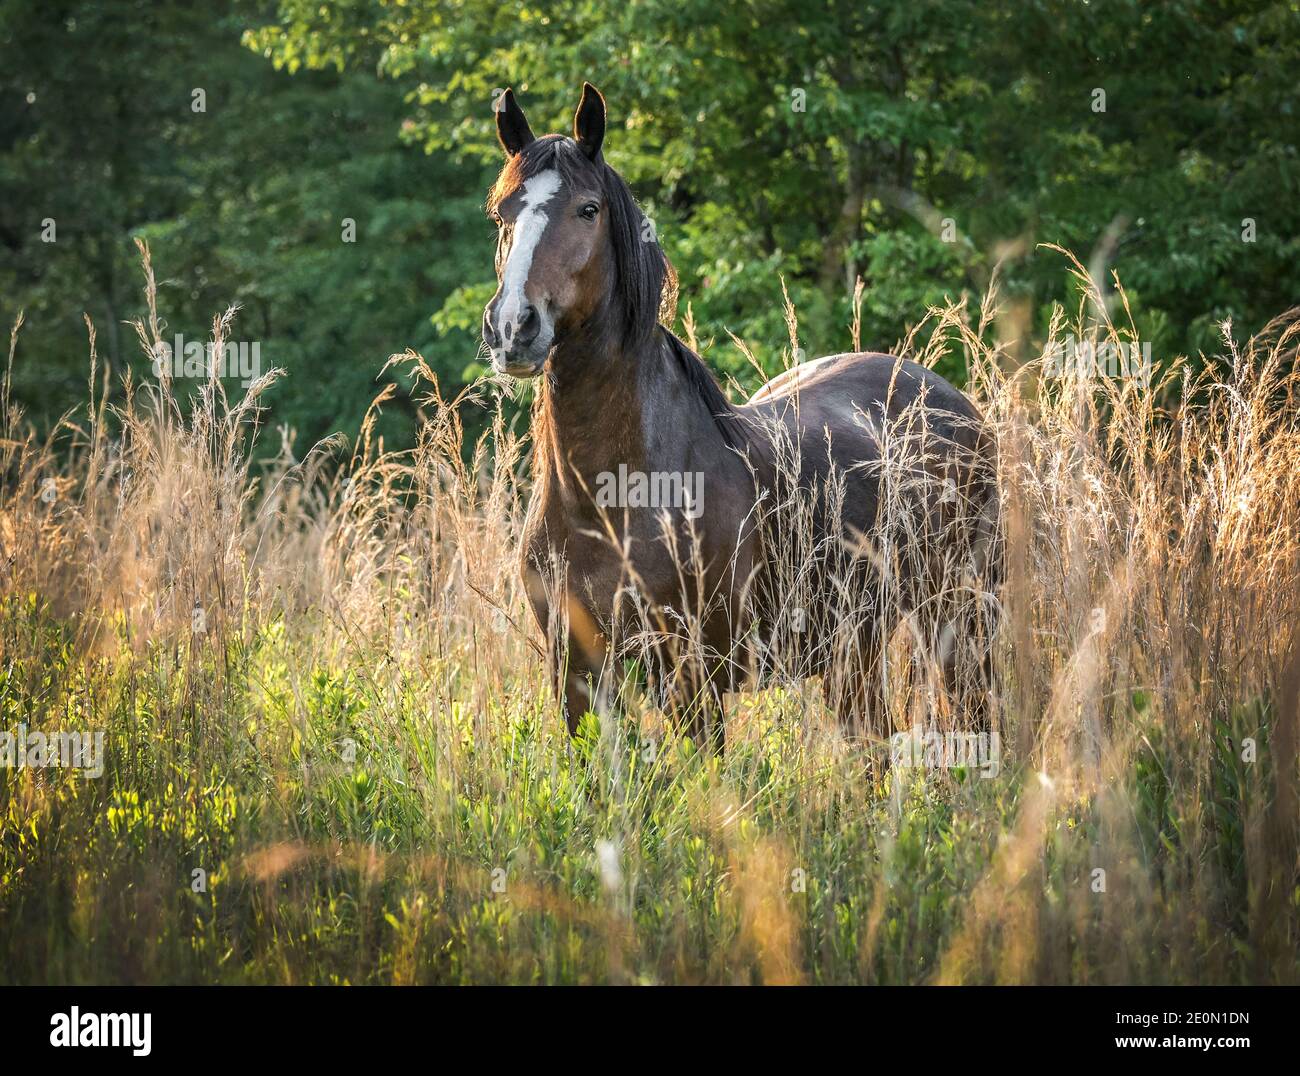 Mustang horse gelding in meadow Stock Photo